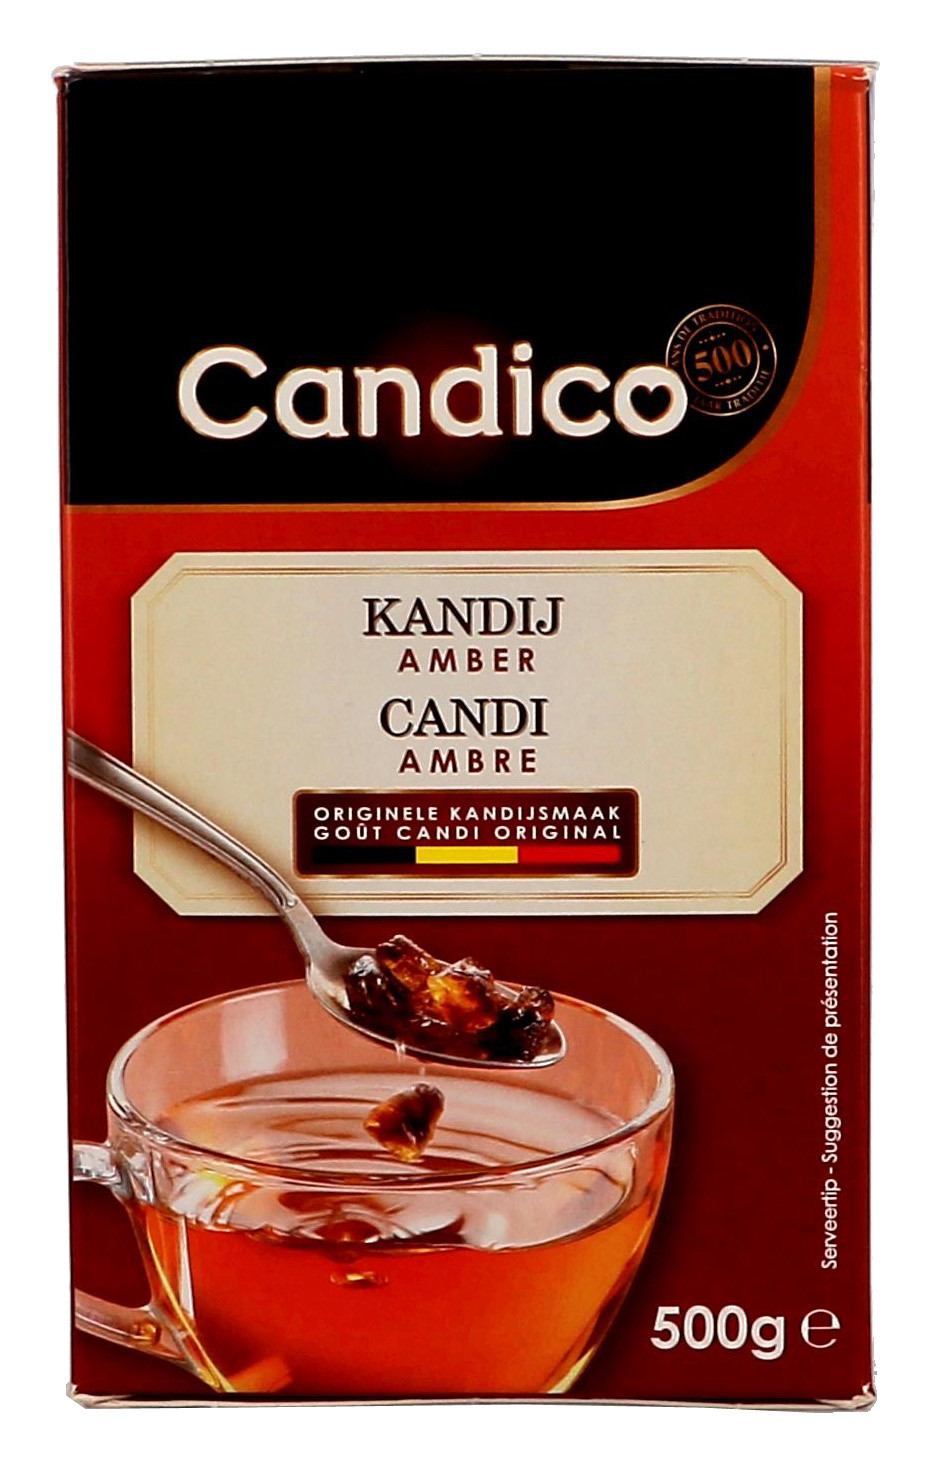 Kandijsuiker Amber 500gr Candico 